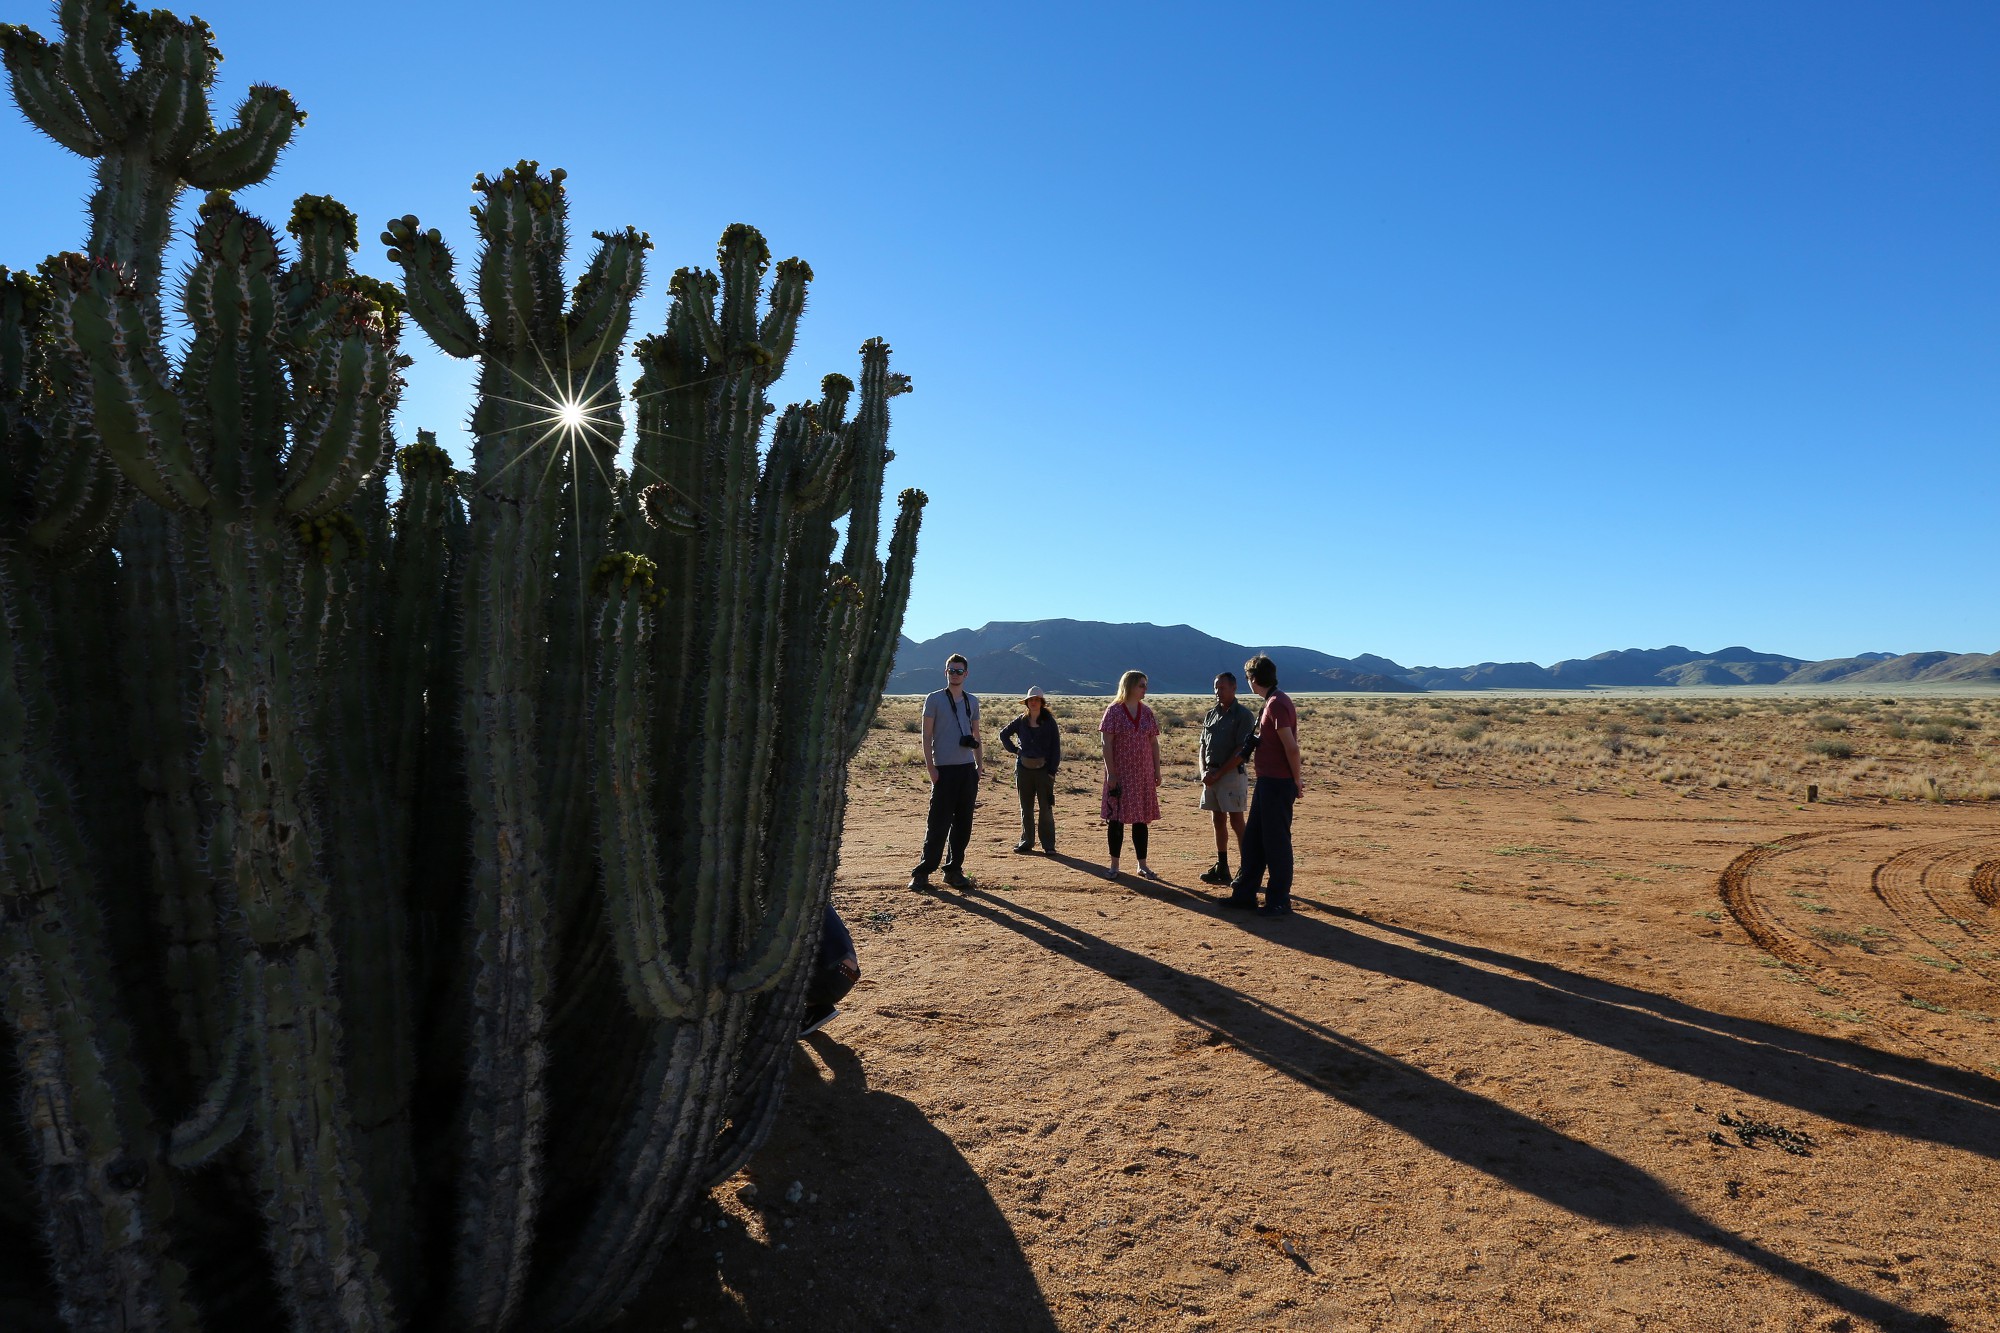 Endlich mal ein anderes Motiv. Hier aber auch mit der Blende und mit der Sonne in Szene gesetzt. Und mit Menschen – die helfen oft, Größenverhältnisse zu vermitteln, in unserem Fall hier zeigt das deutlich, wie groß und gewaltig der Kaktus zu sein scheint.